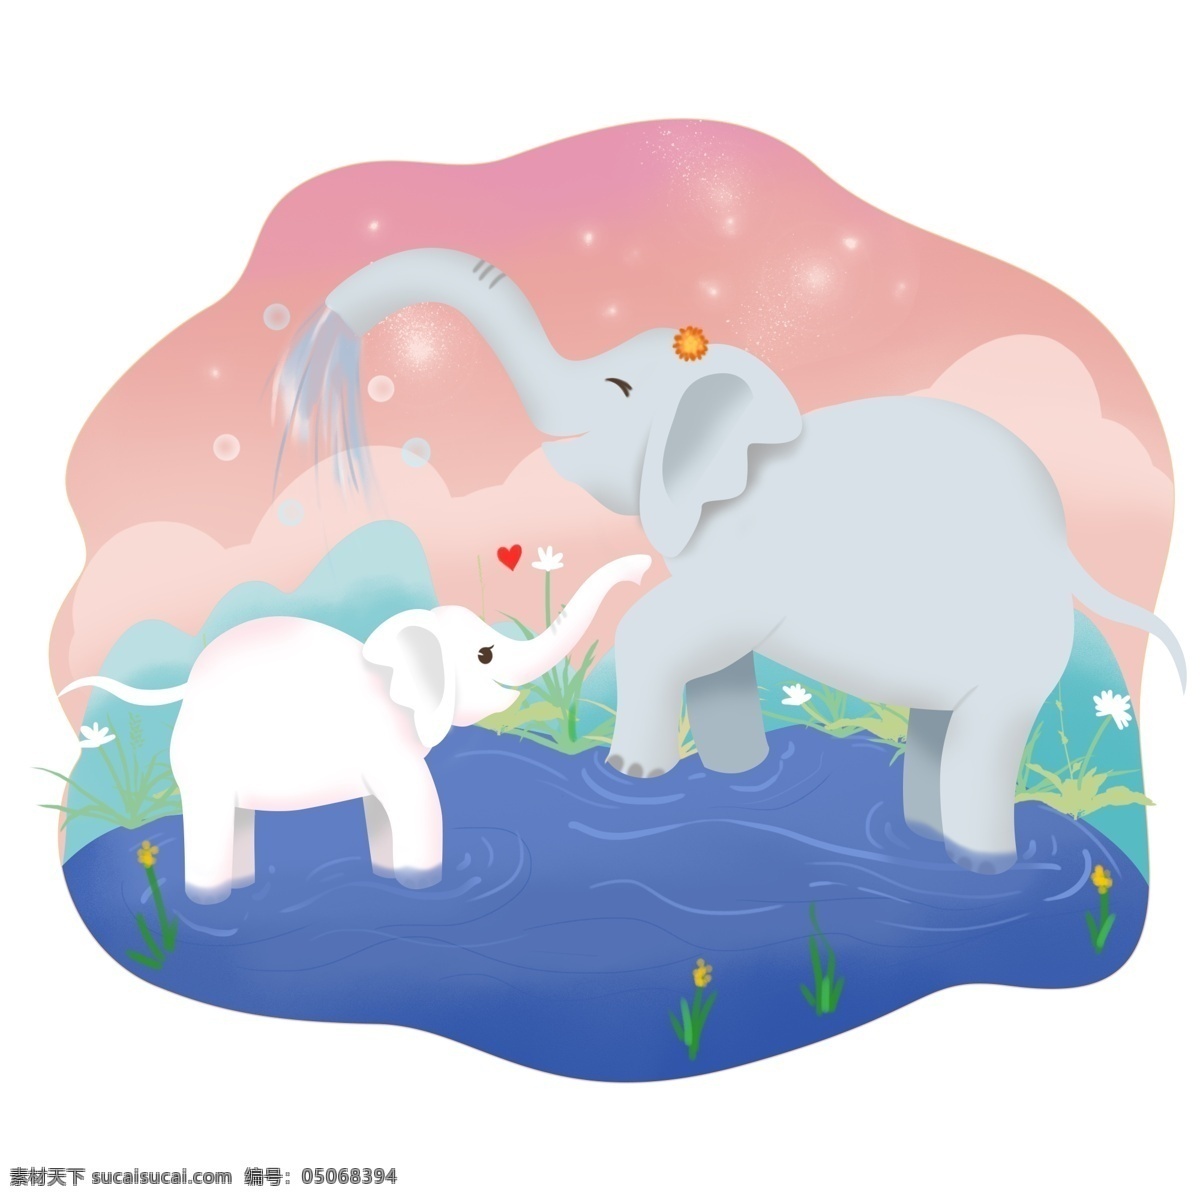 母亲节 大象 手绘 母亲 孩子 动物 元素 卡通 可爱 母亲与孩子 装饰